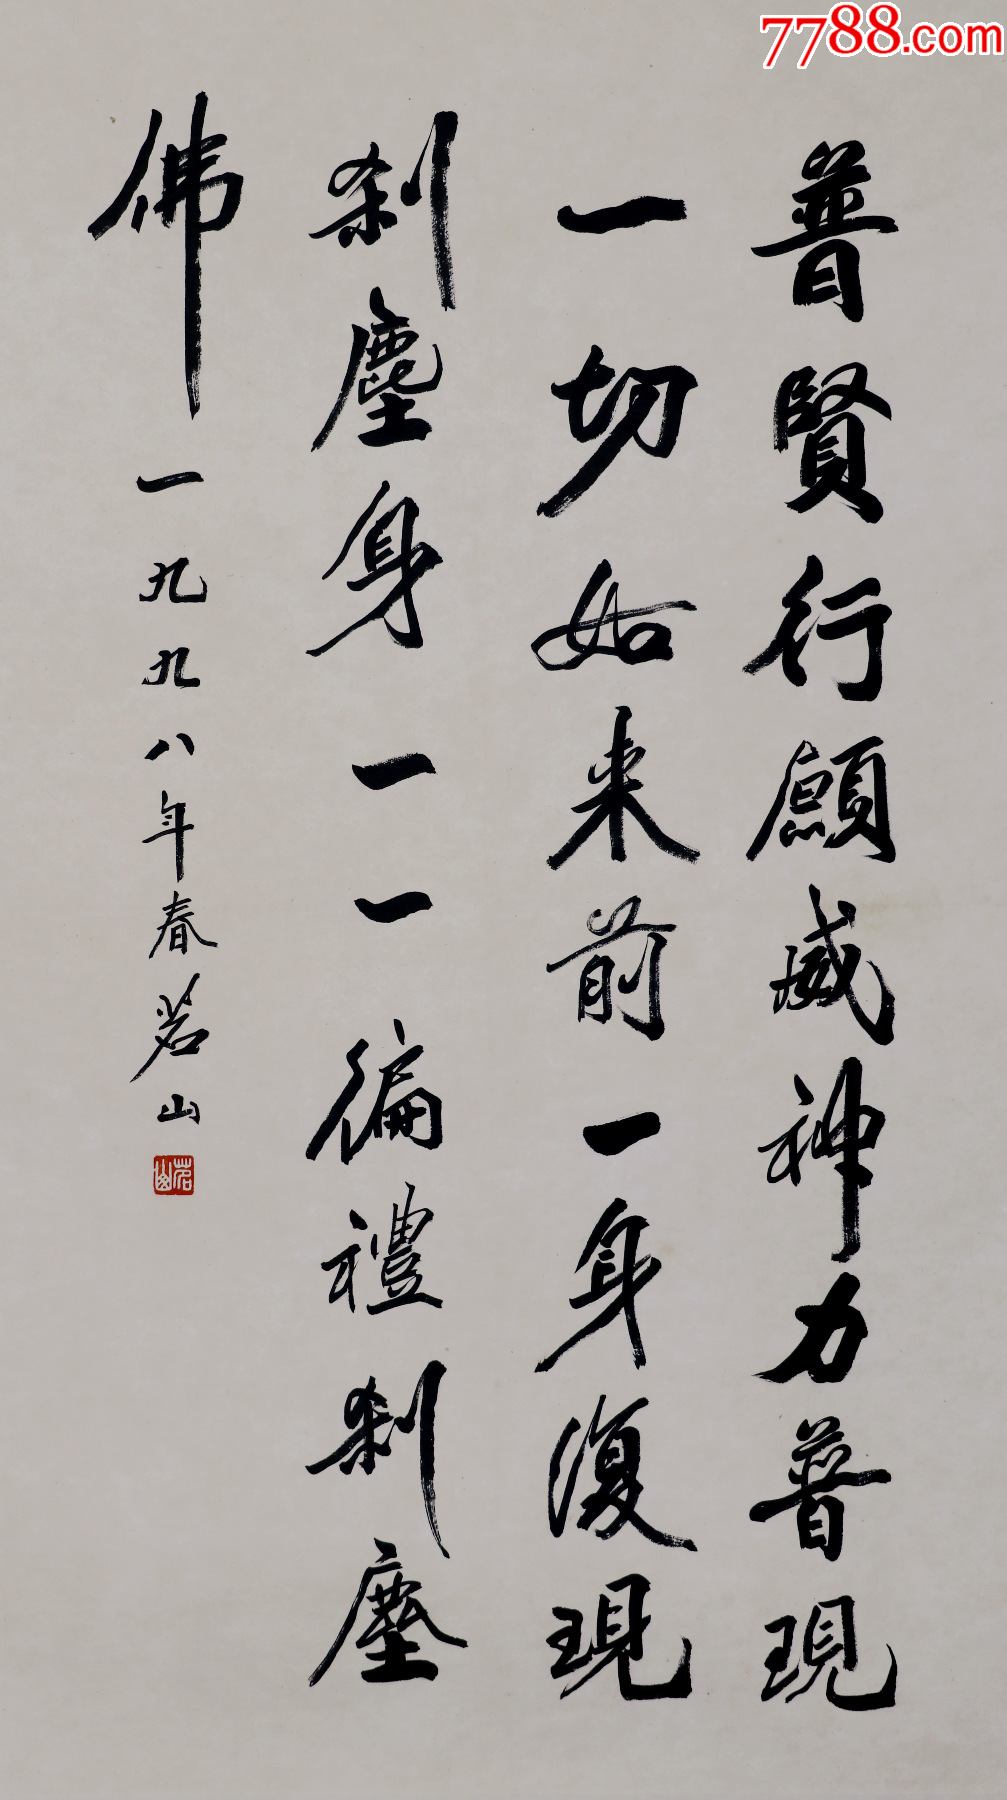 【茗山法师】中国佛教会副会长,栖霞寺方丈,书法